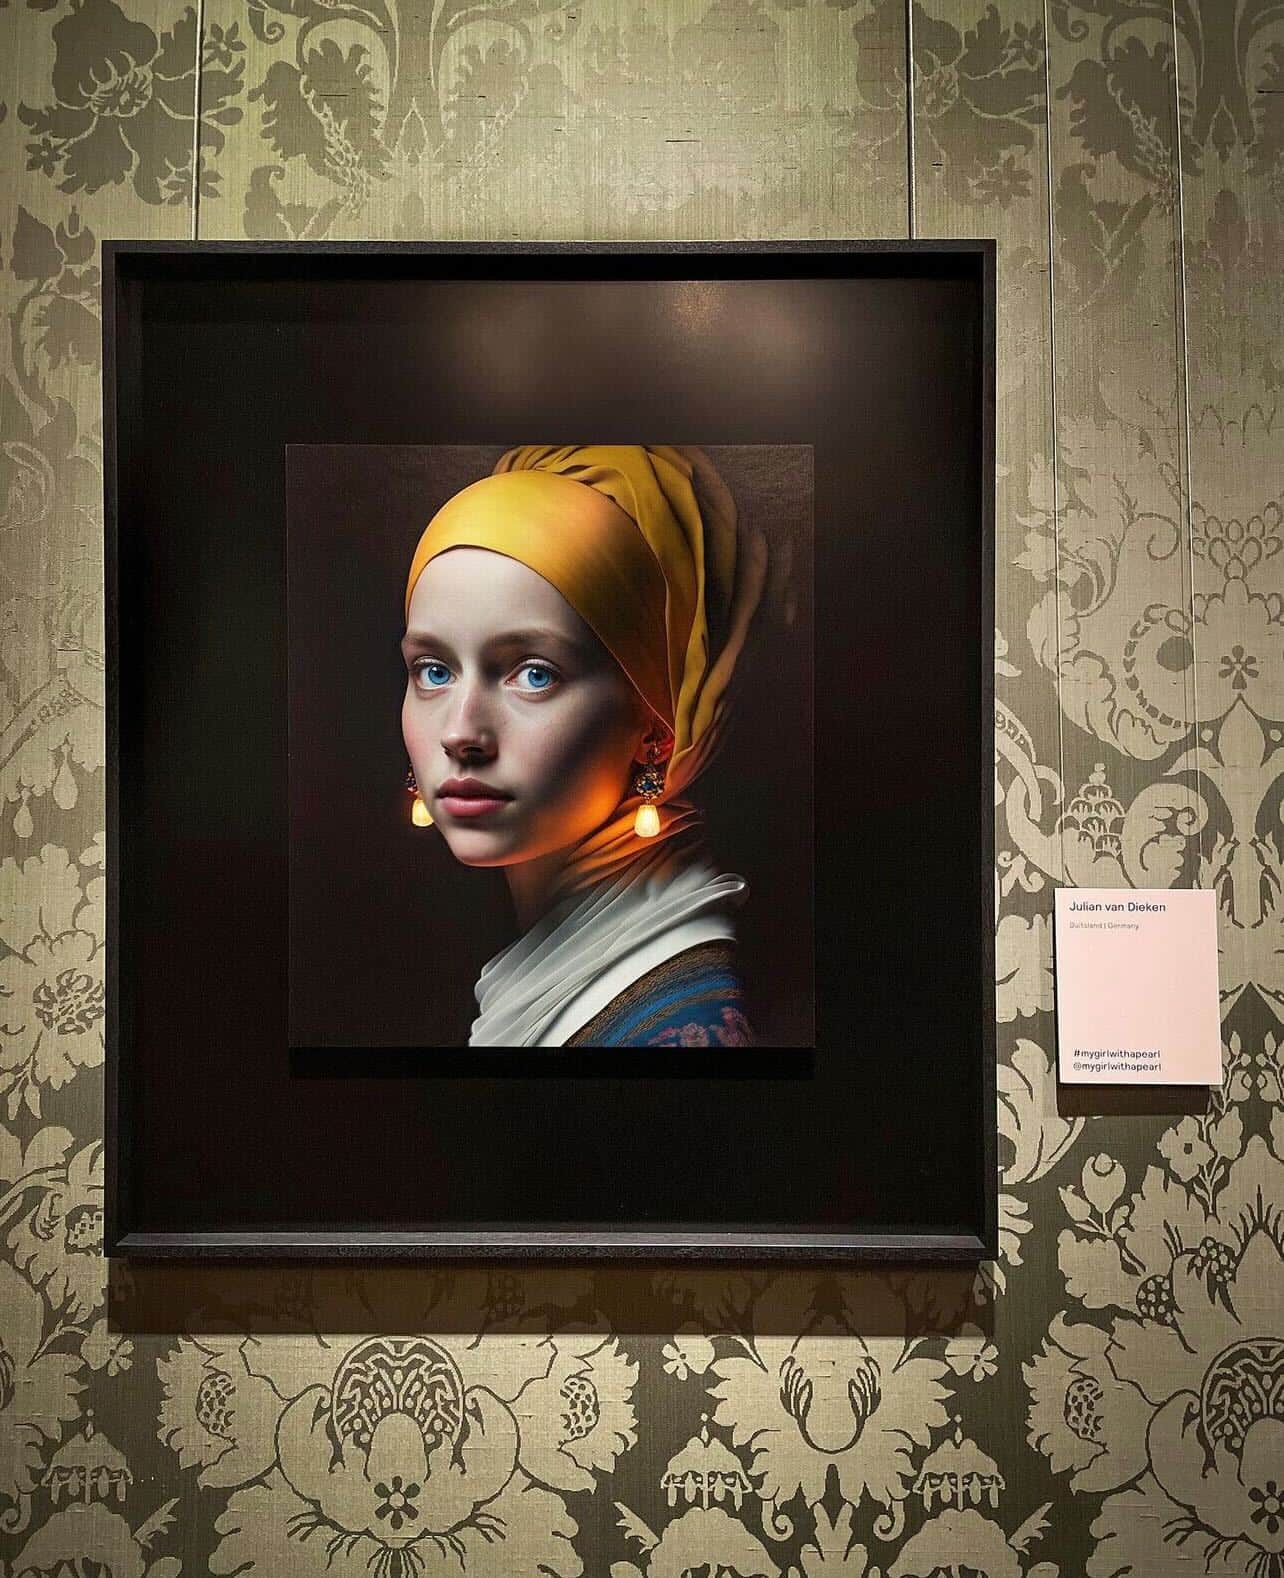 オランダの美術館で「真珠の耳飾りの少女」のAI作品が出展されネット上で嵐を呼ぶ